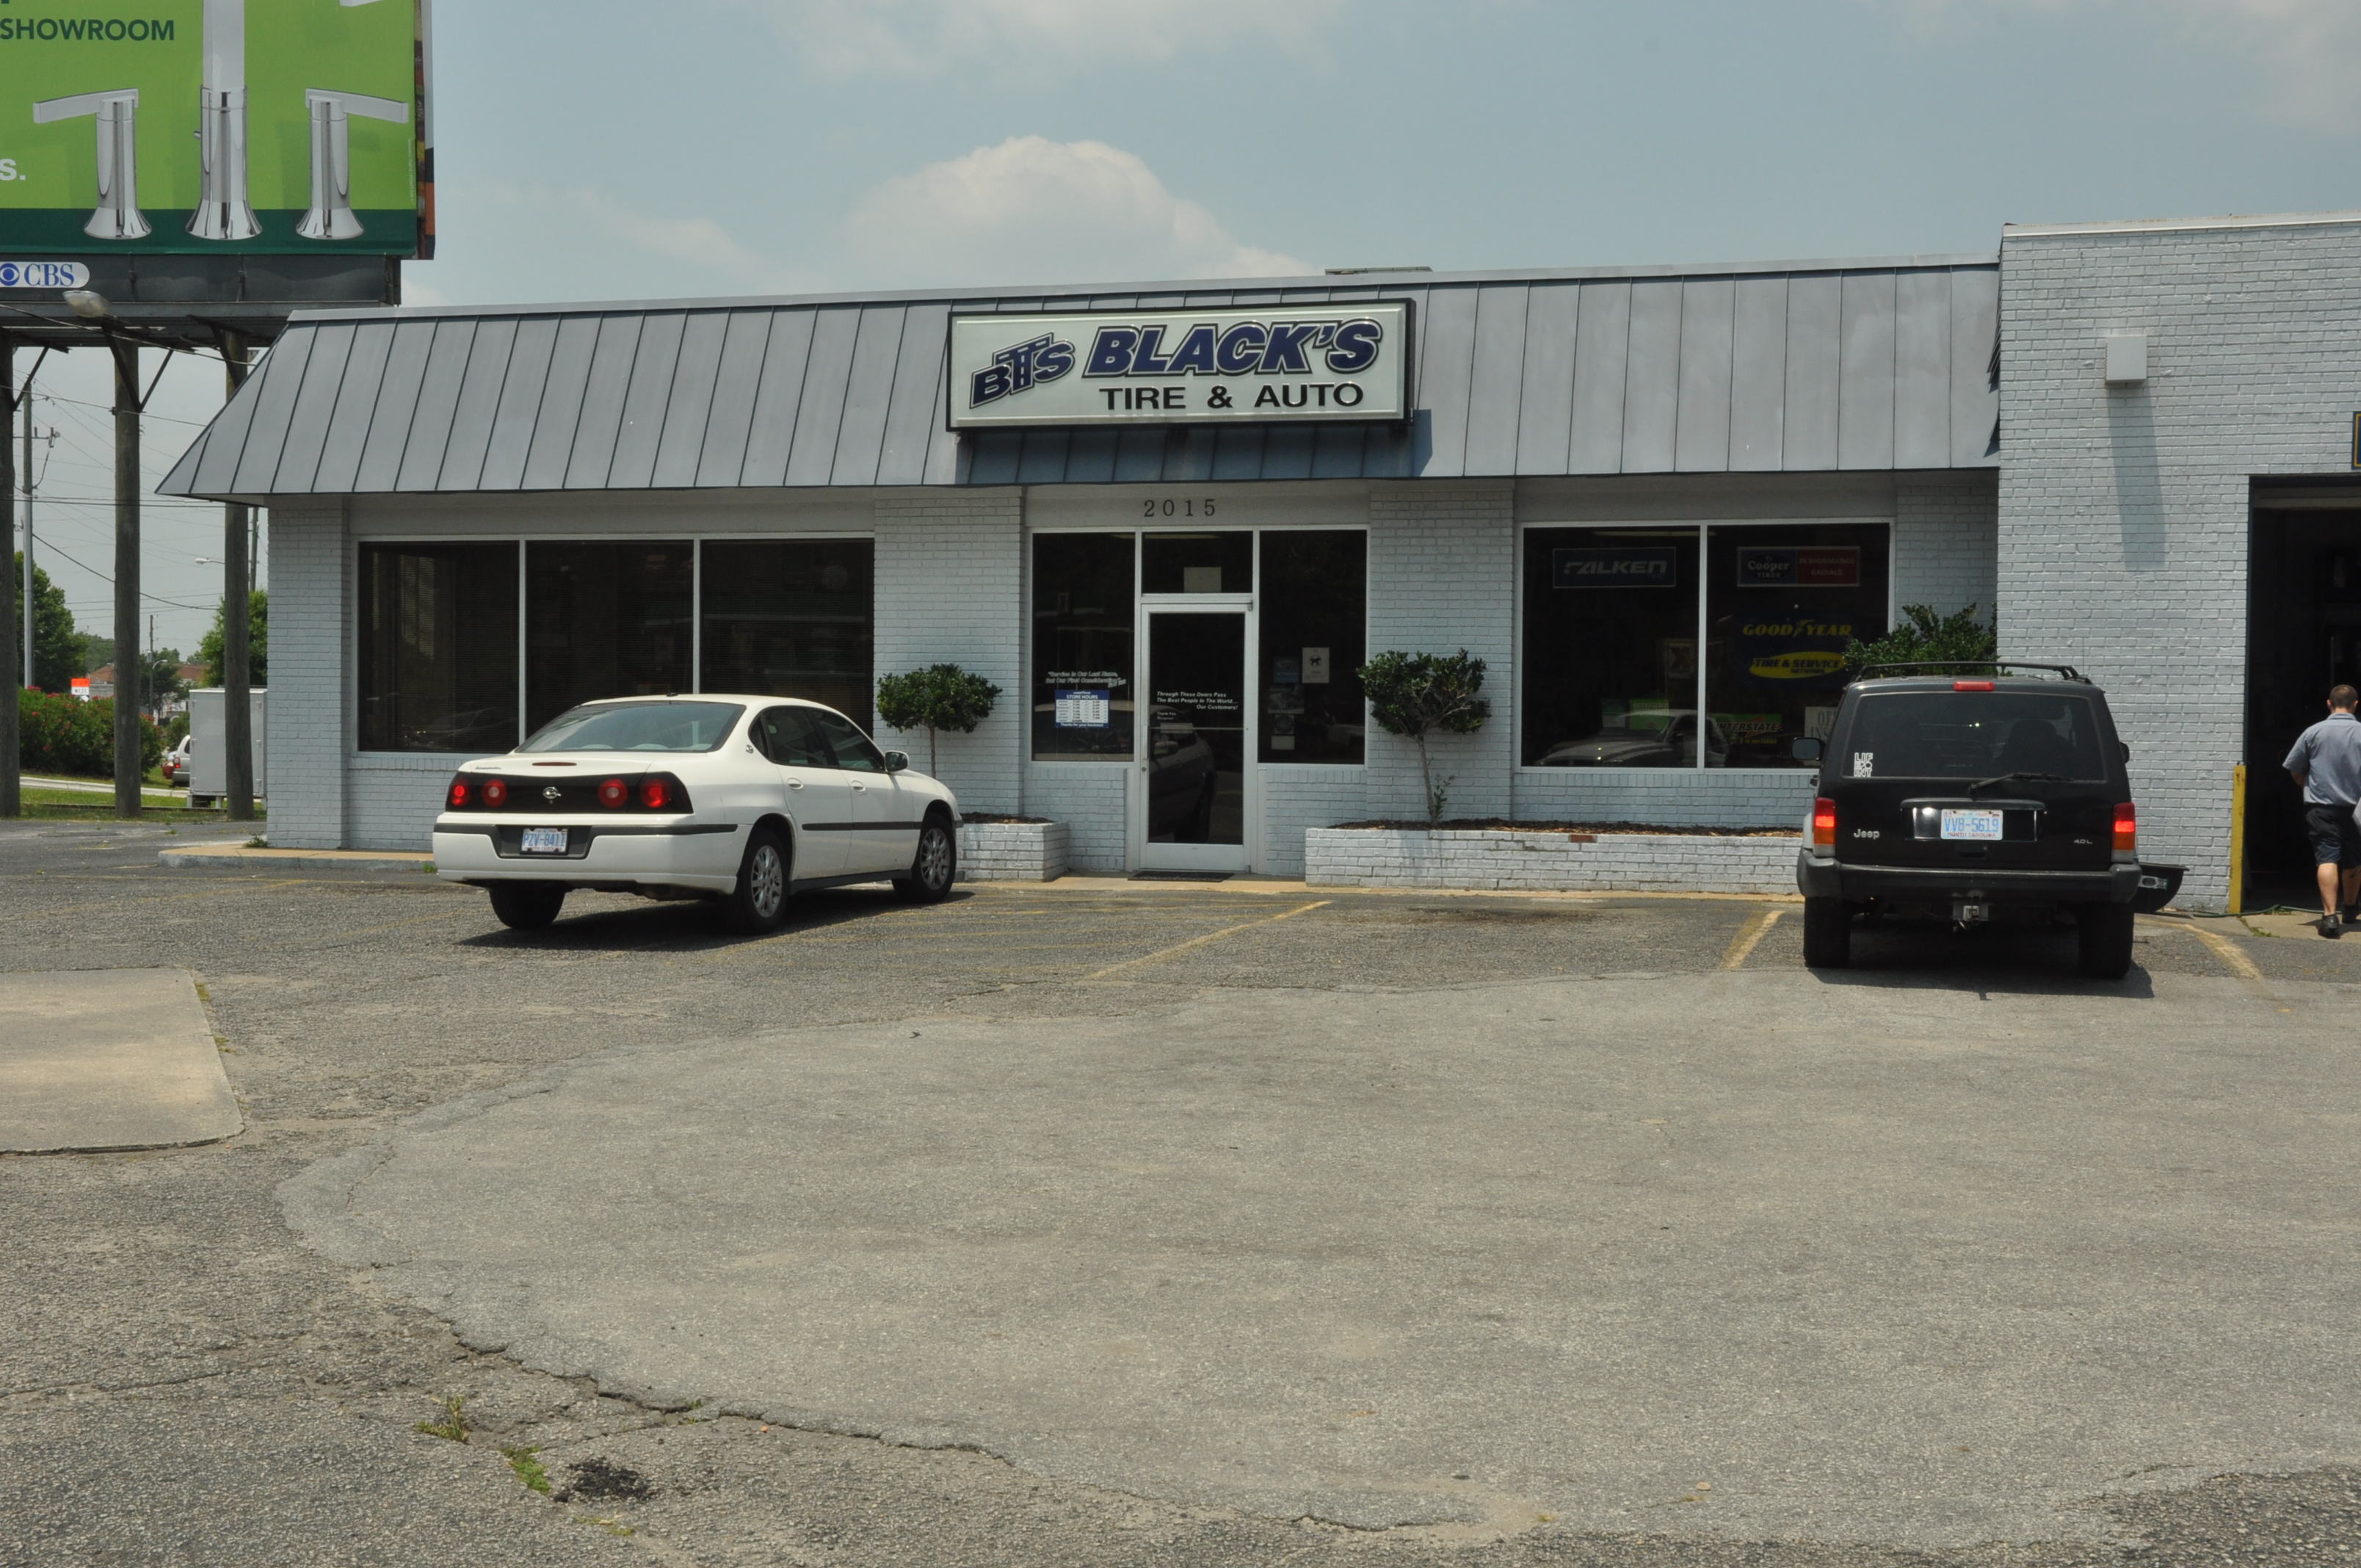 Black's Tire & Auto Services Photo